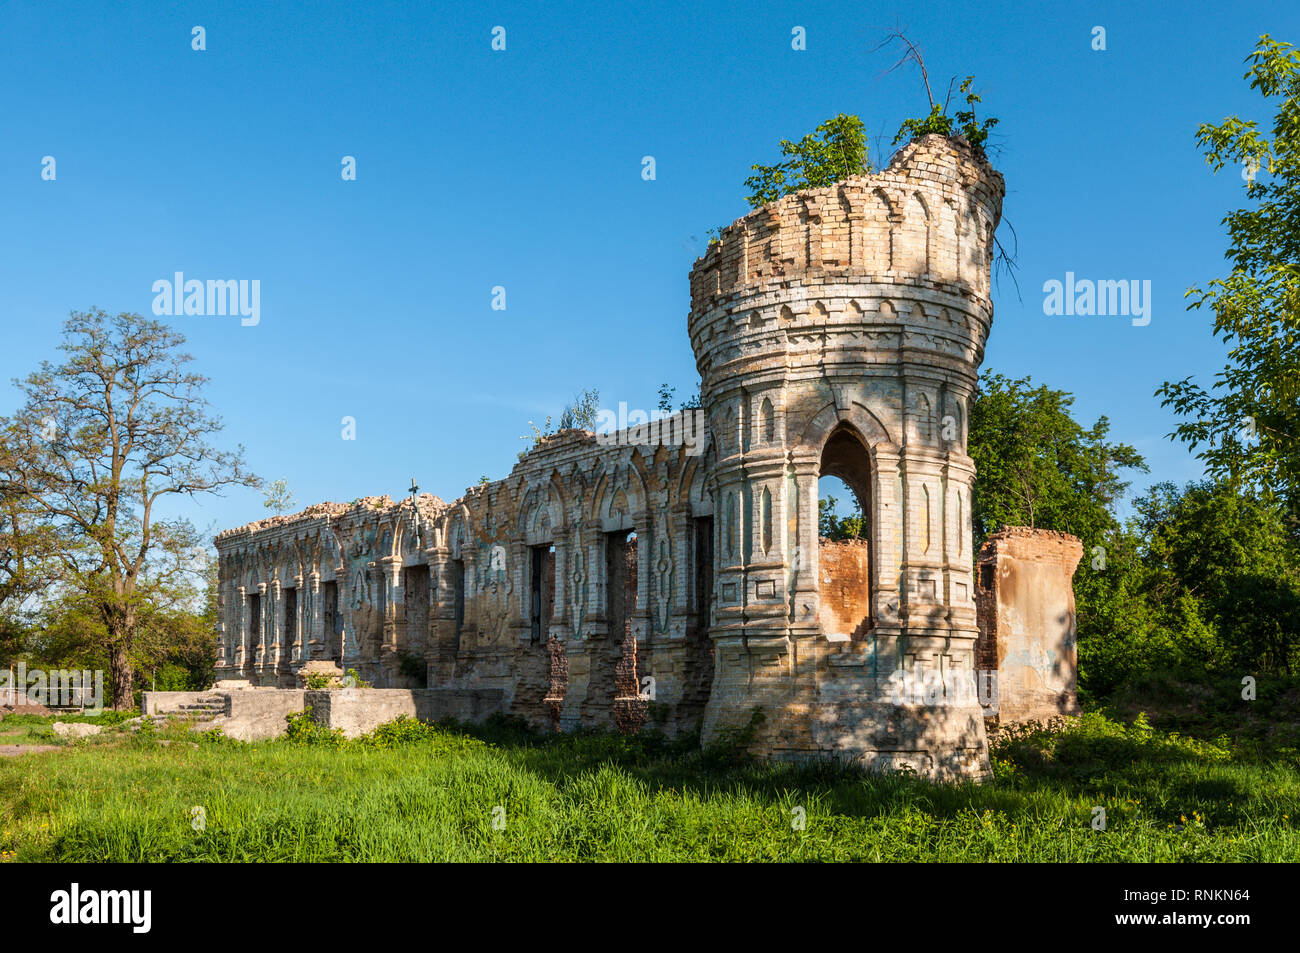 Nemishaieve, Kyiv region, Ukraine - May 11, 2013: Ruins of the Osten-Saksen estate or Nemishaieve Palace in Nemishaieve, Kyiv region, Ukraine. Stock Photo